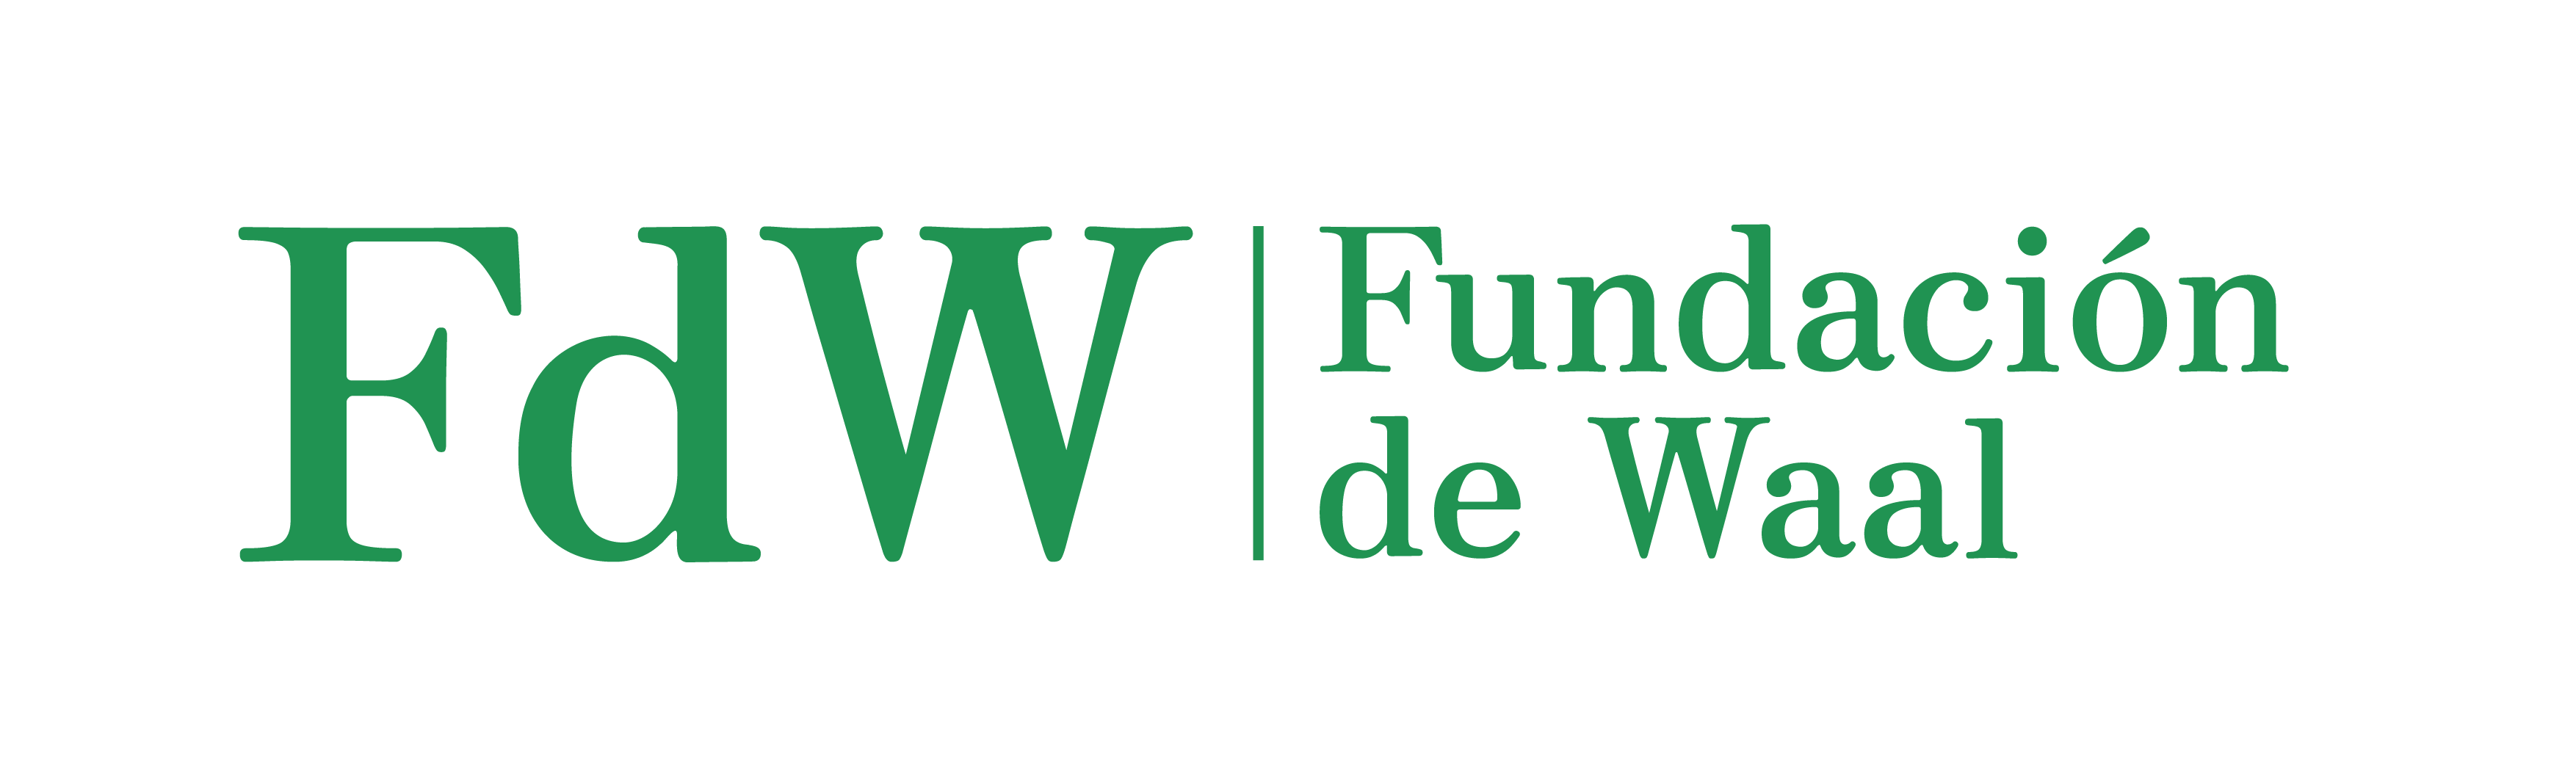 Fundación de Waal